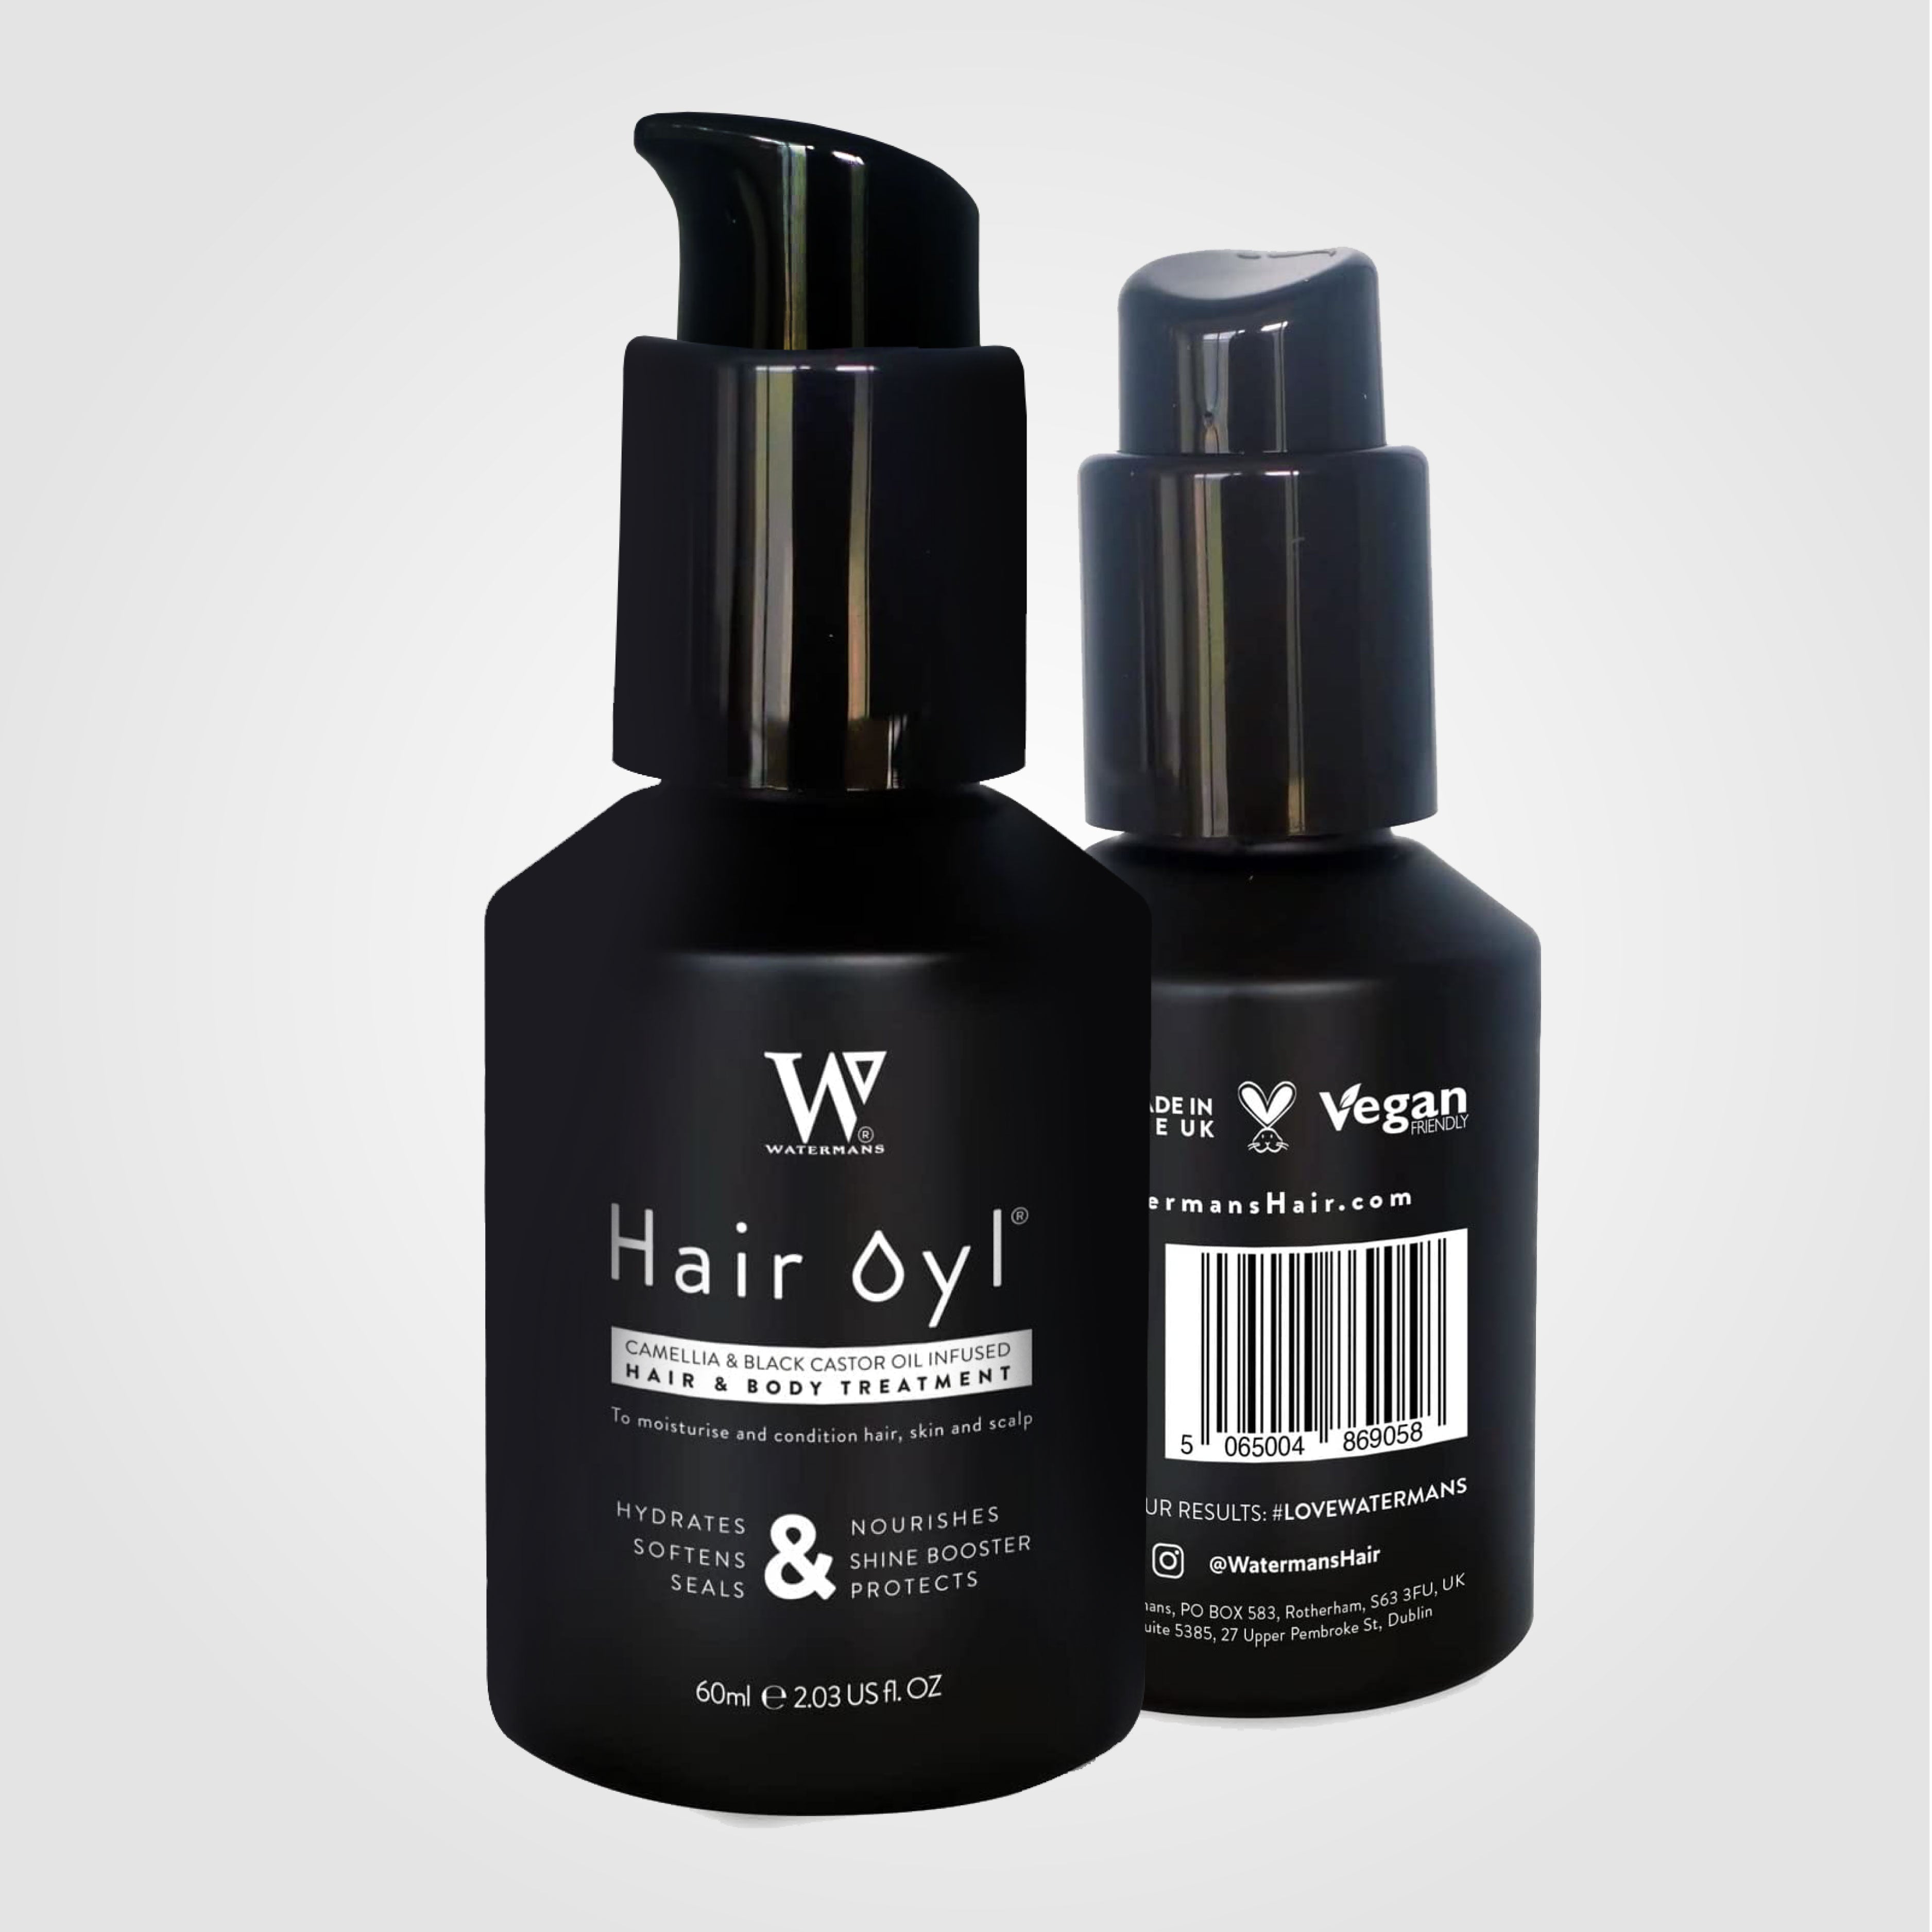 Hair Oil by Watermans